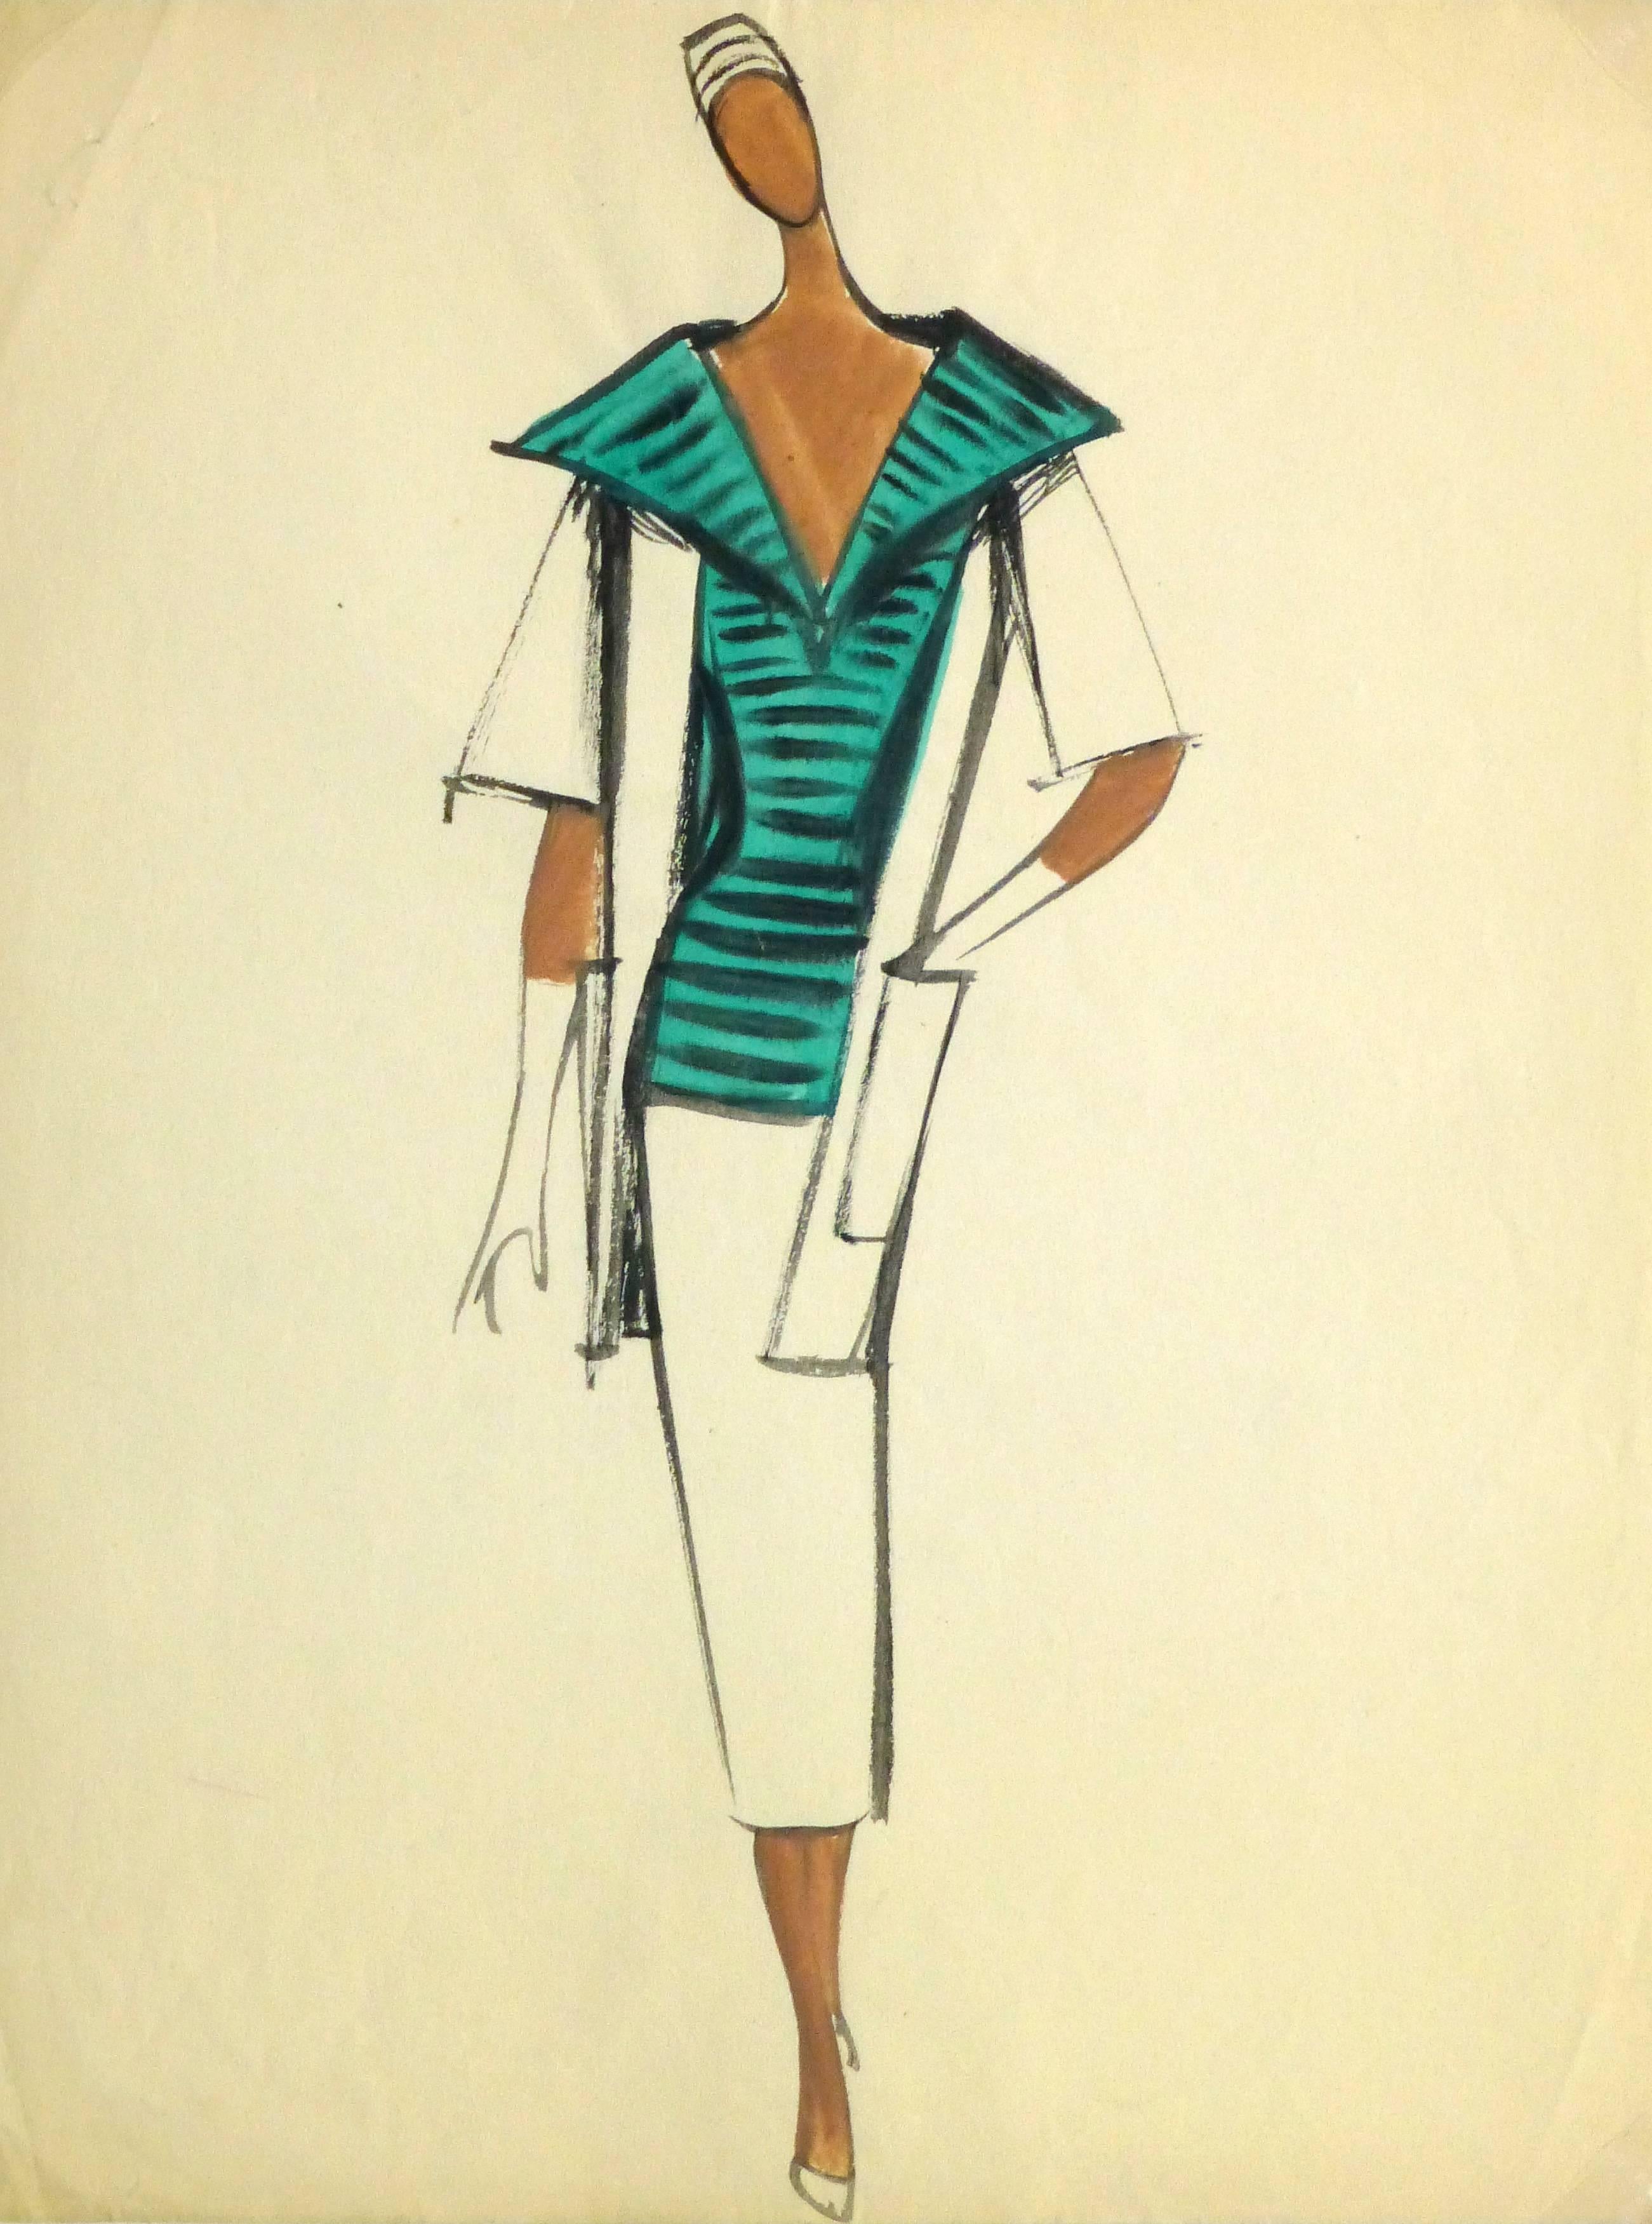 Pierre Balmain Figurative Art - Vintage Balmain Fashion Sketch - Green Striped Blouse